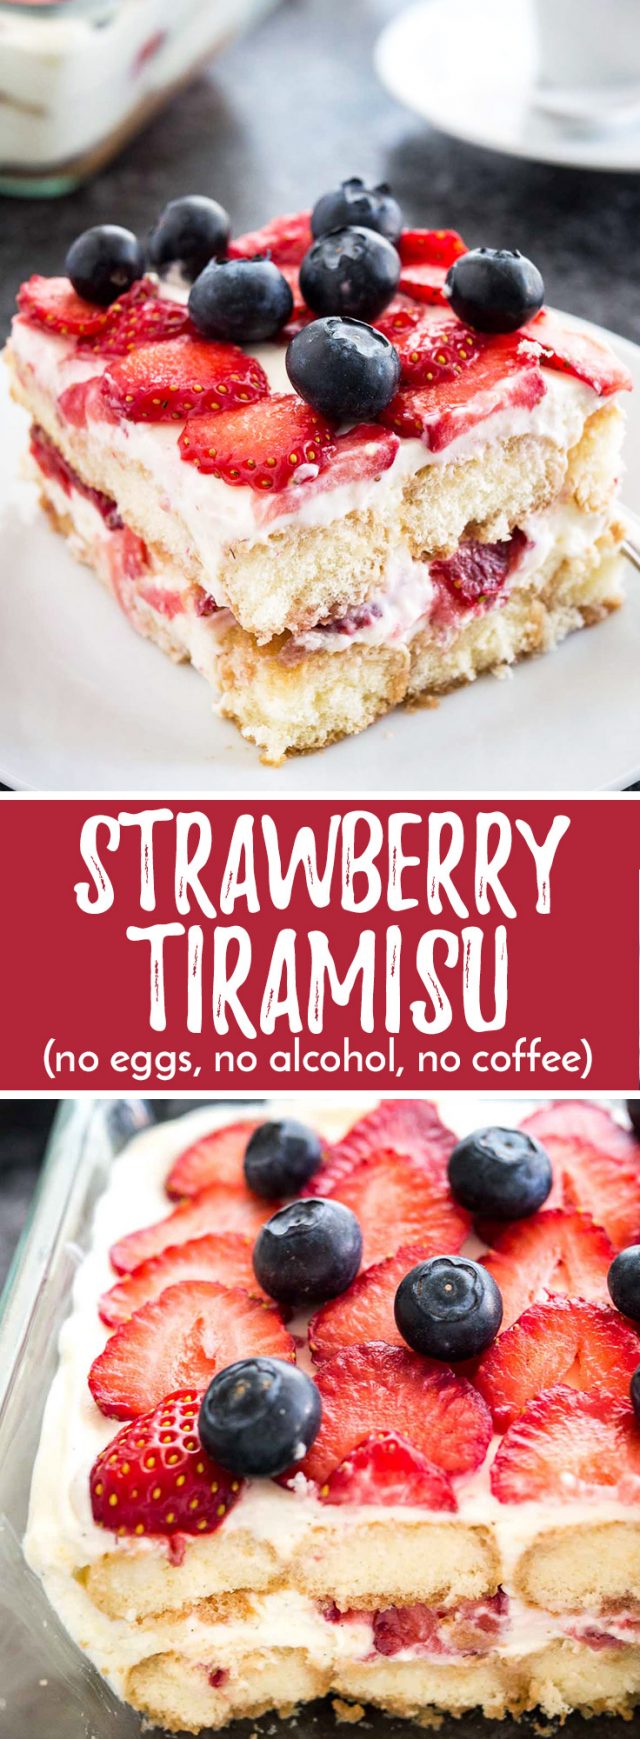 Strawberry Tiramisu (No raw eggs, no alcohol, no coffee)